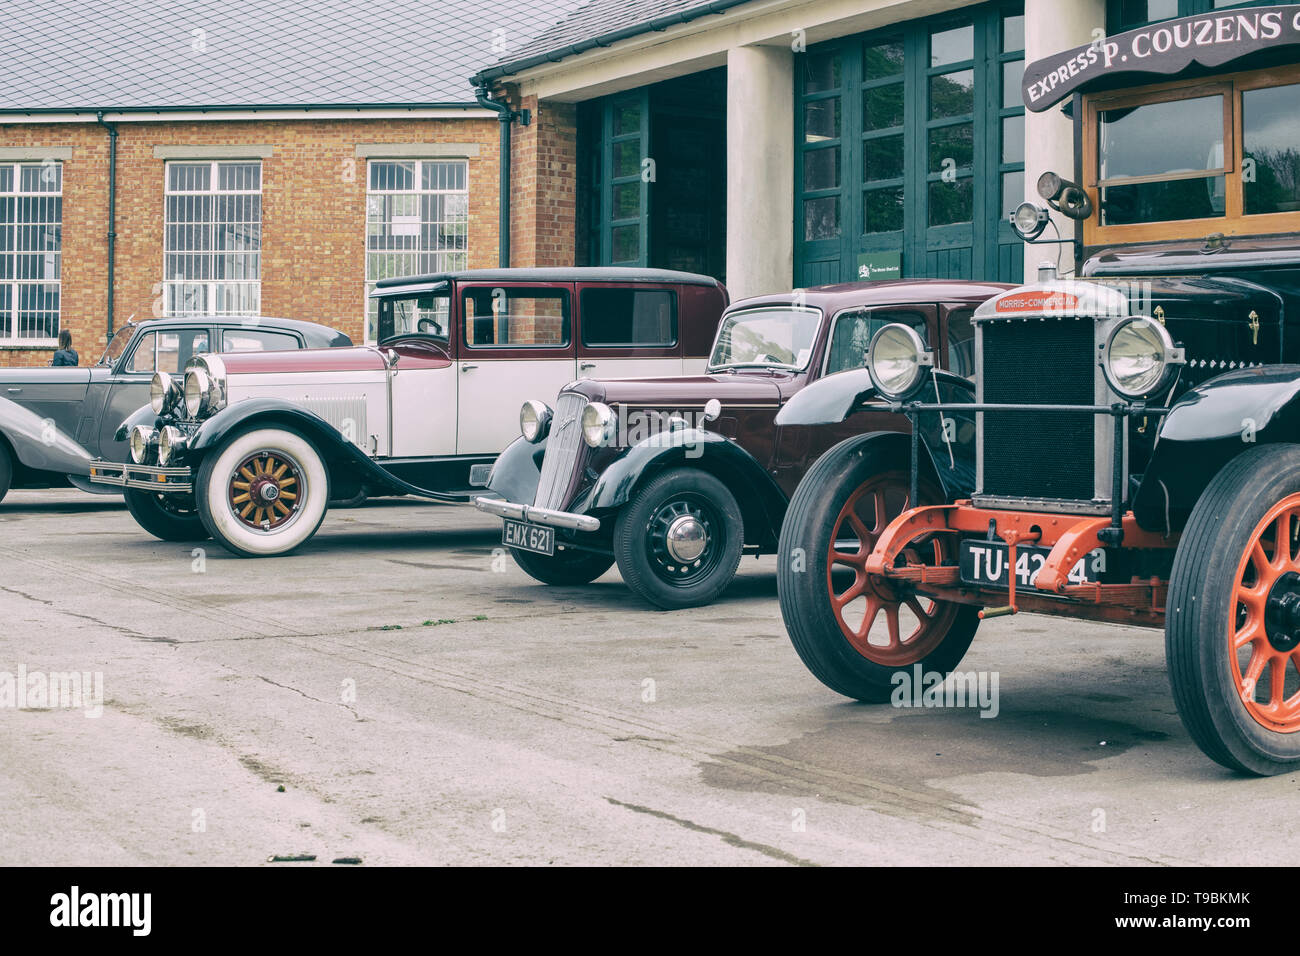 Voitures et camions Vintage à l'extérieur d'un garage à Bicester Heritage Centre 'Drive il Day'. Bicester, Oxfordshire, Angleterre. Vintage filtre appliqué Banque D'Images